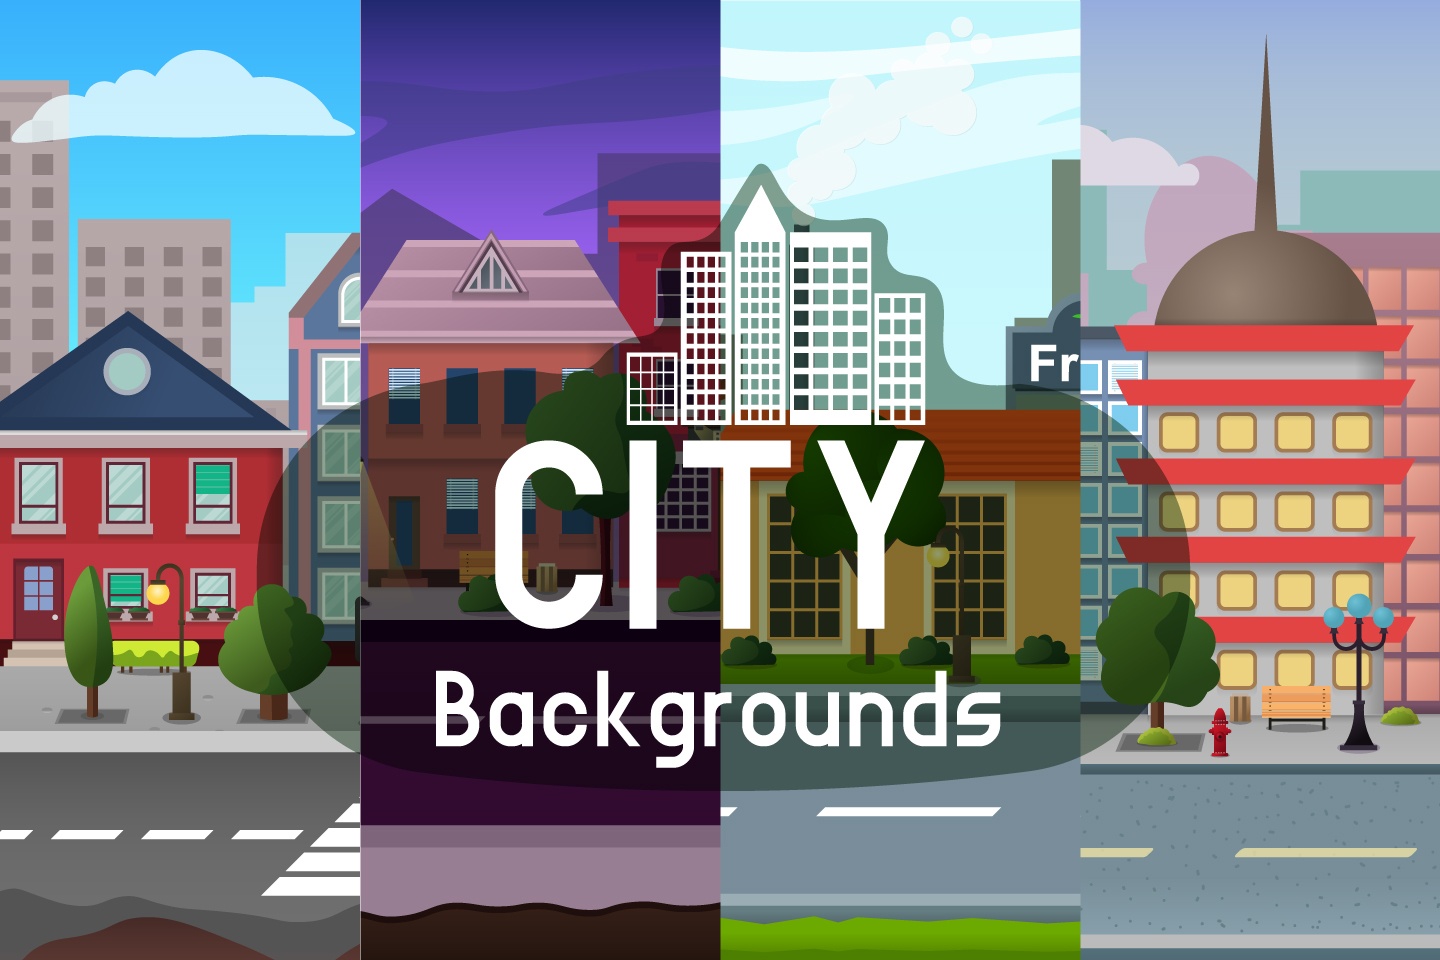 Làm mới màn hình của bạn với hình nền thành phố trò chơi lăn sơn tương đối đơn giản. Sự kết hợp giữa đô thị hiện đại và cách chơi vui nhộn sẽ mang đến cho bạn những trải nghiệm thú vị. Hãy click ngay để khám phá.